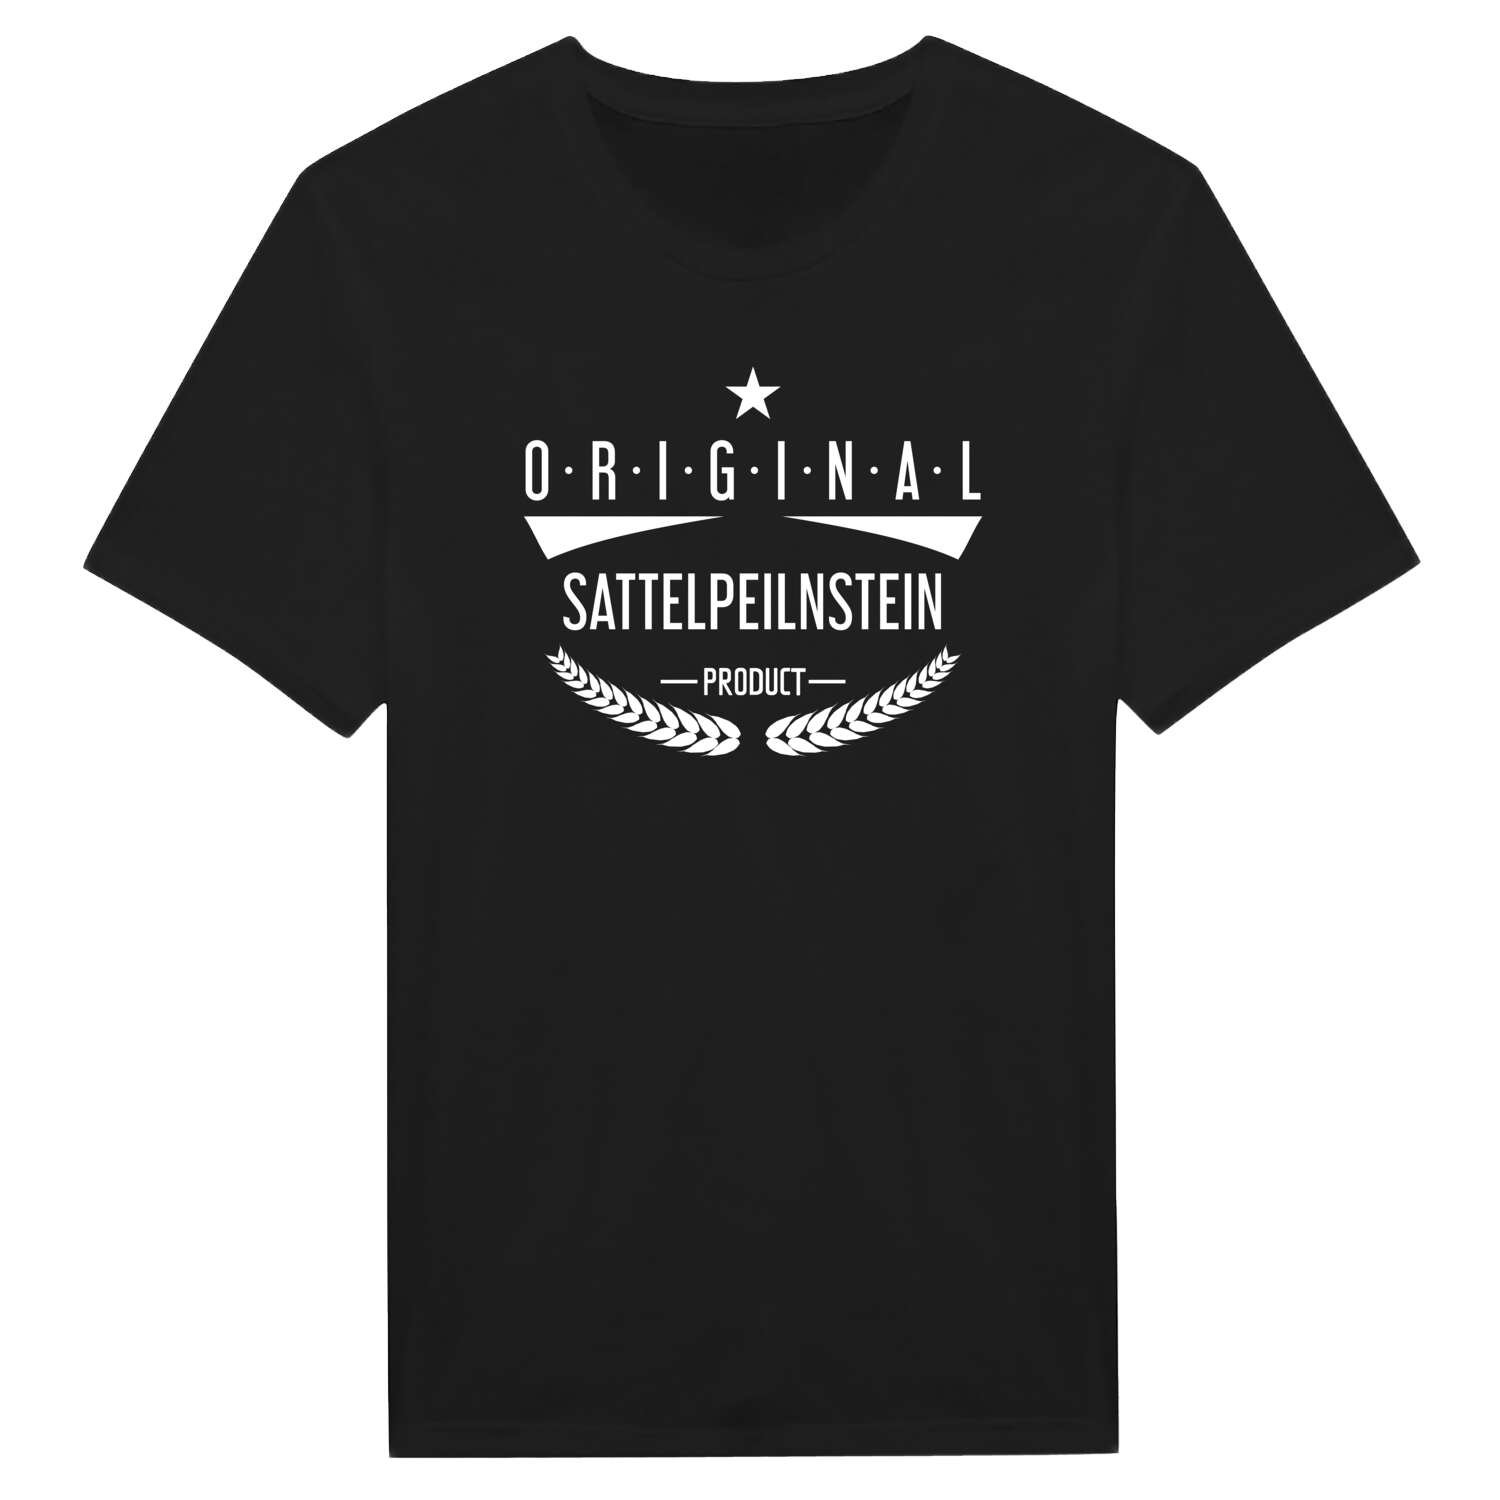 Sattelpeilnstein T-Shirt »Original Product«